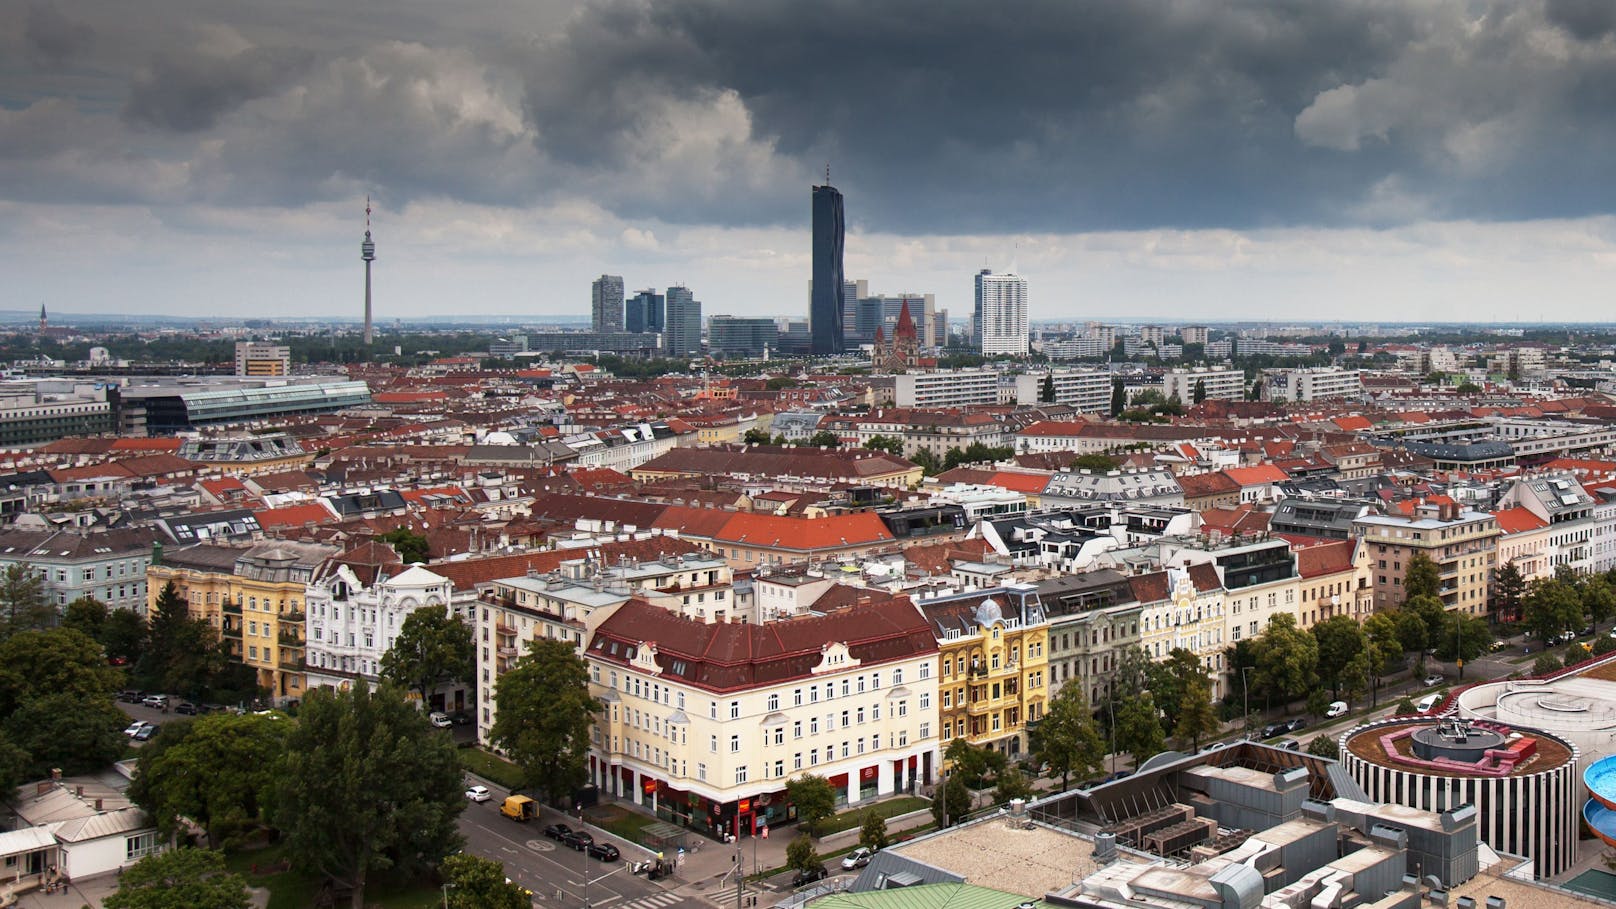 Übersicht der Skyline des nördlichen Donauufer Wiens.